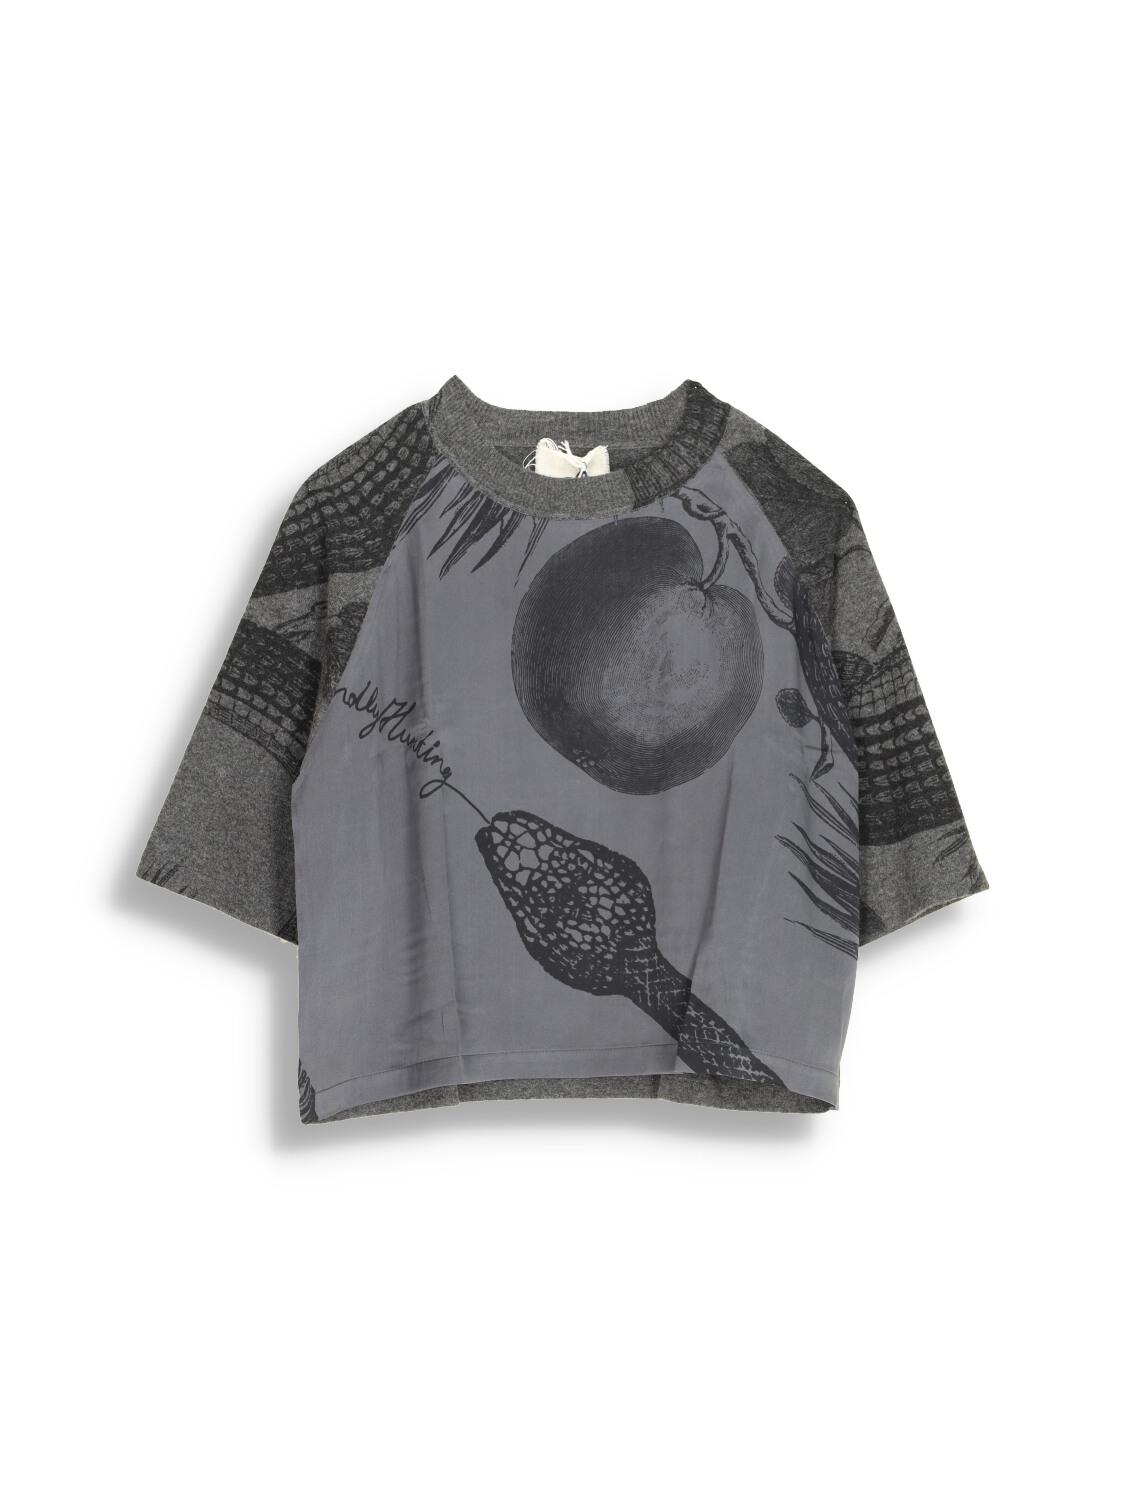 Shirt General Silk Garden Eden - Print design cashmere silk blend sweater